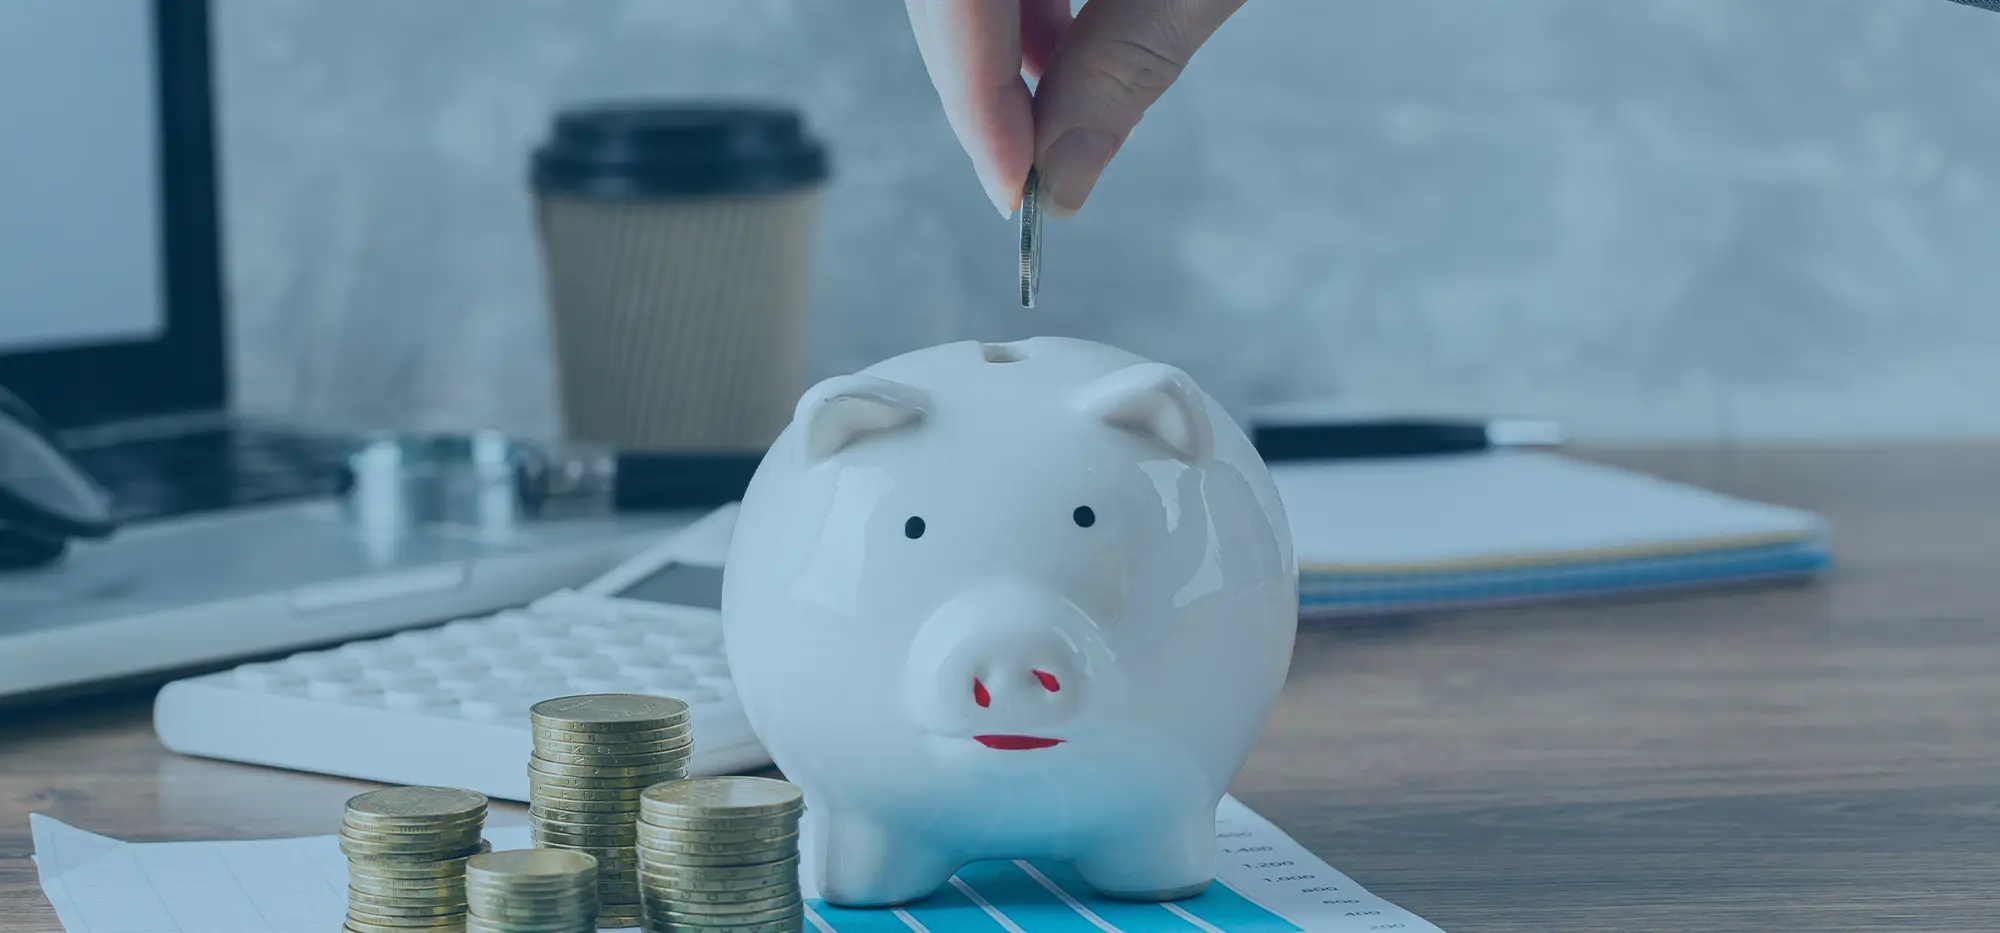 10 dicas práticas para economizar dinheiro no dia a dia